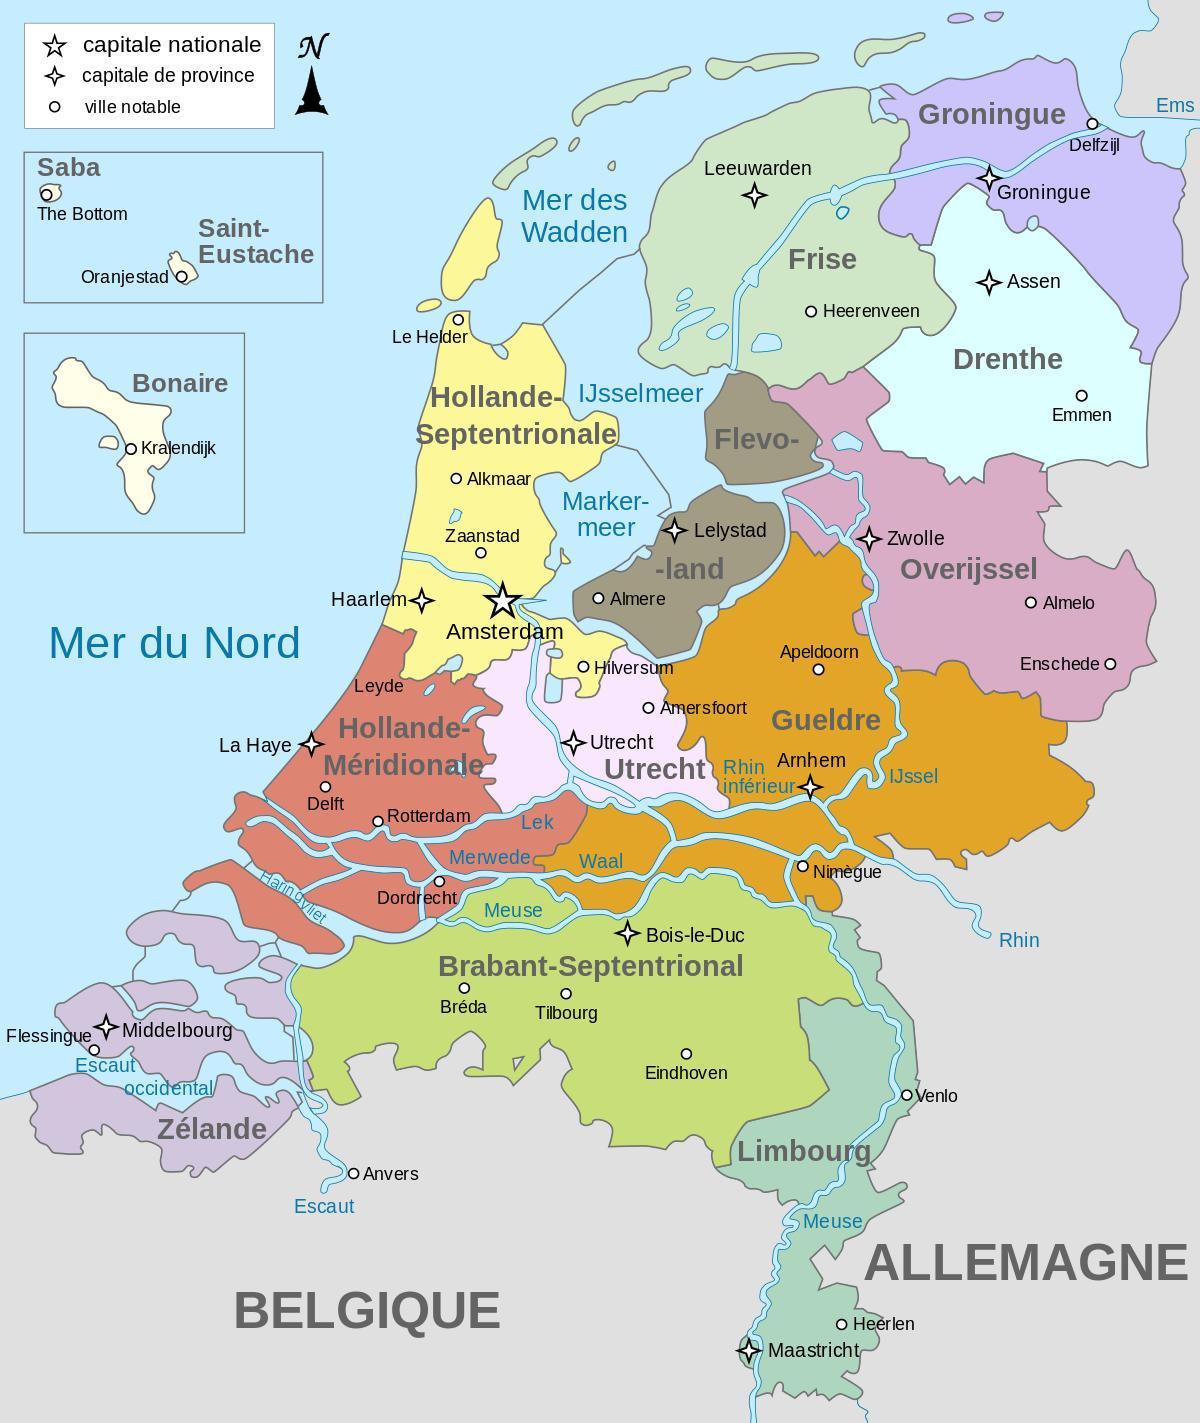 Mapa das zonas dos Países Baixos